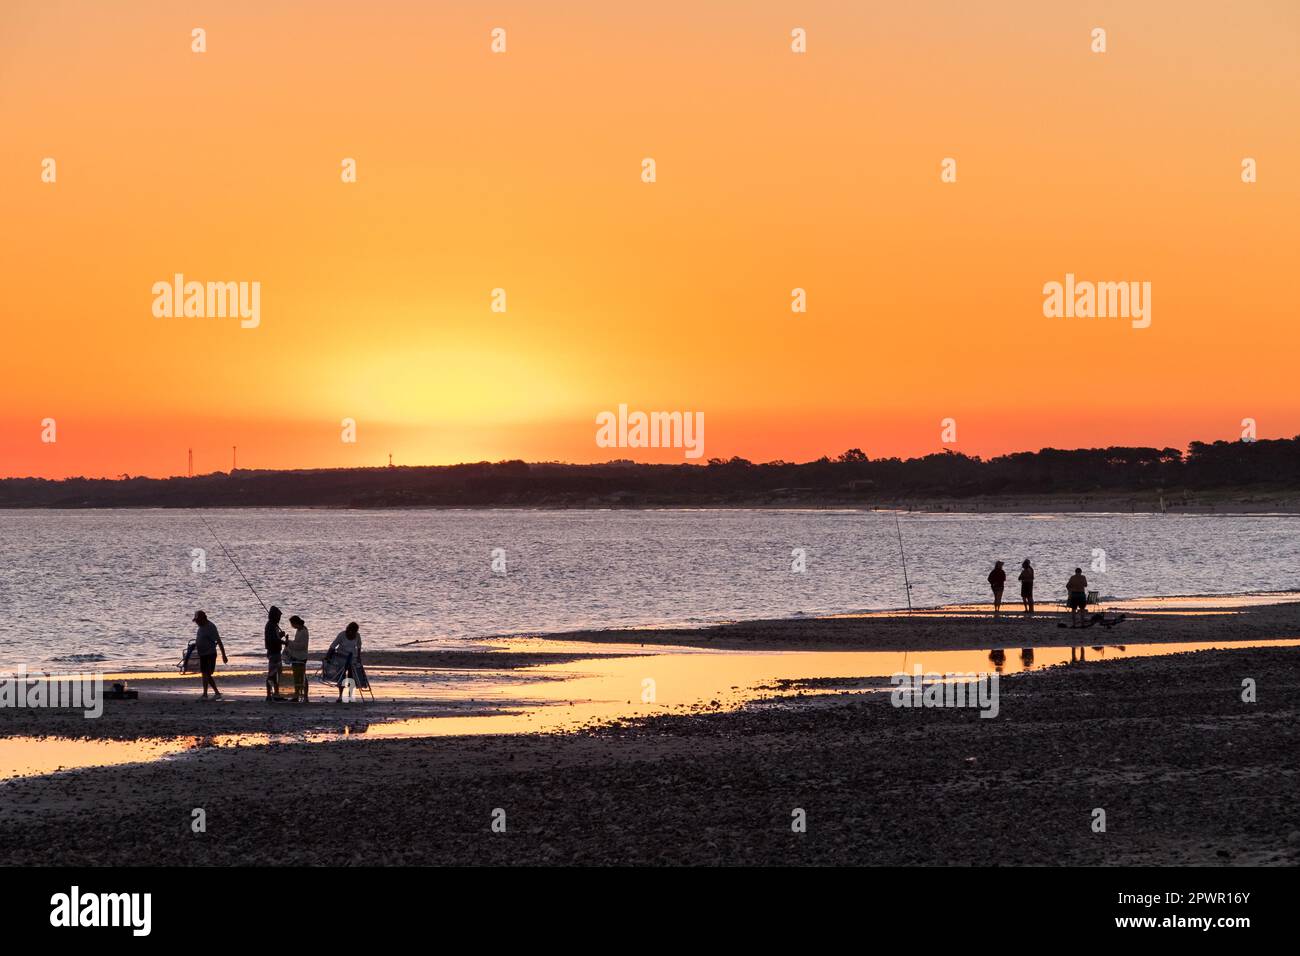 Sagome di pescatori sulla spiaggia di Las Flores, durante un tramonto rossastro, con alcune pozze d'acqua sulla sabbia Foto Stock